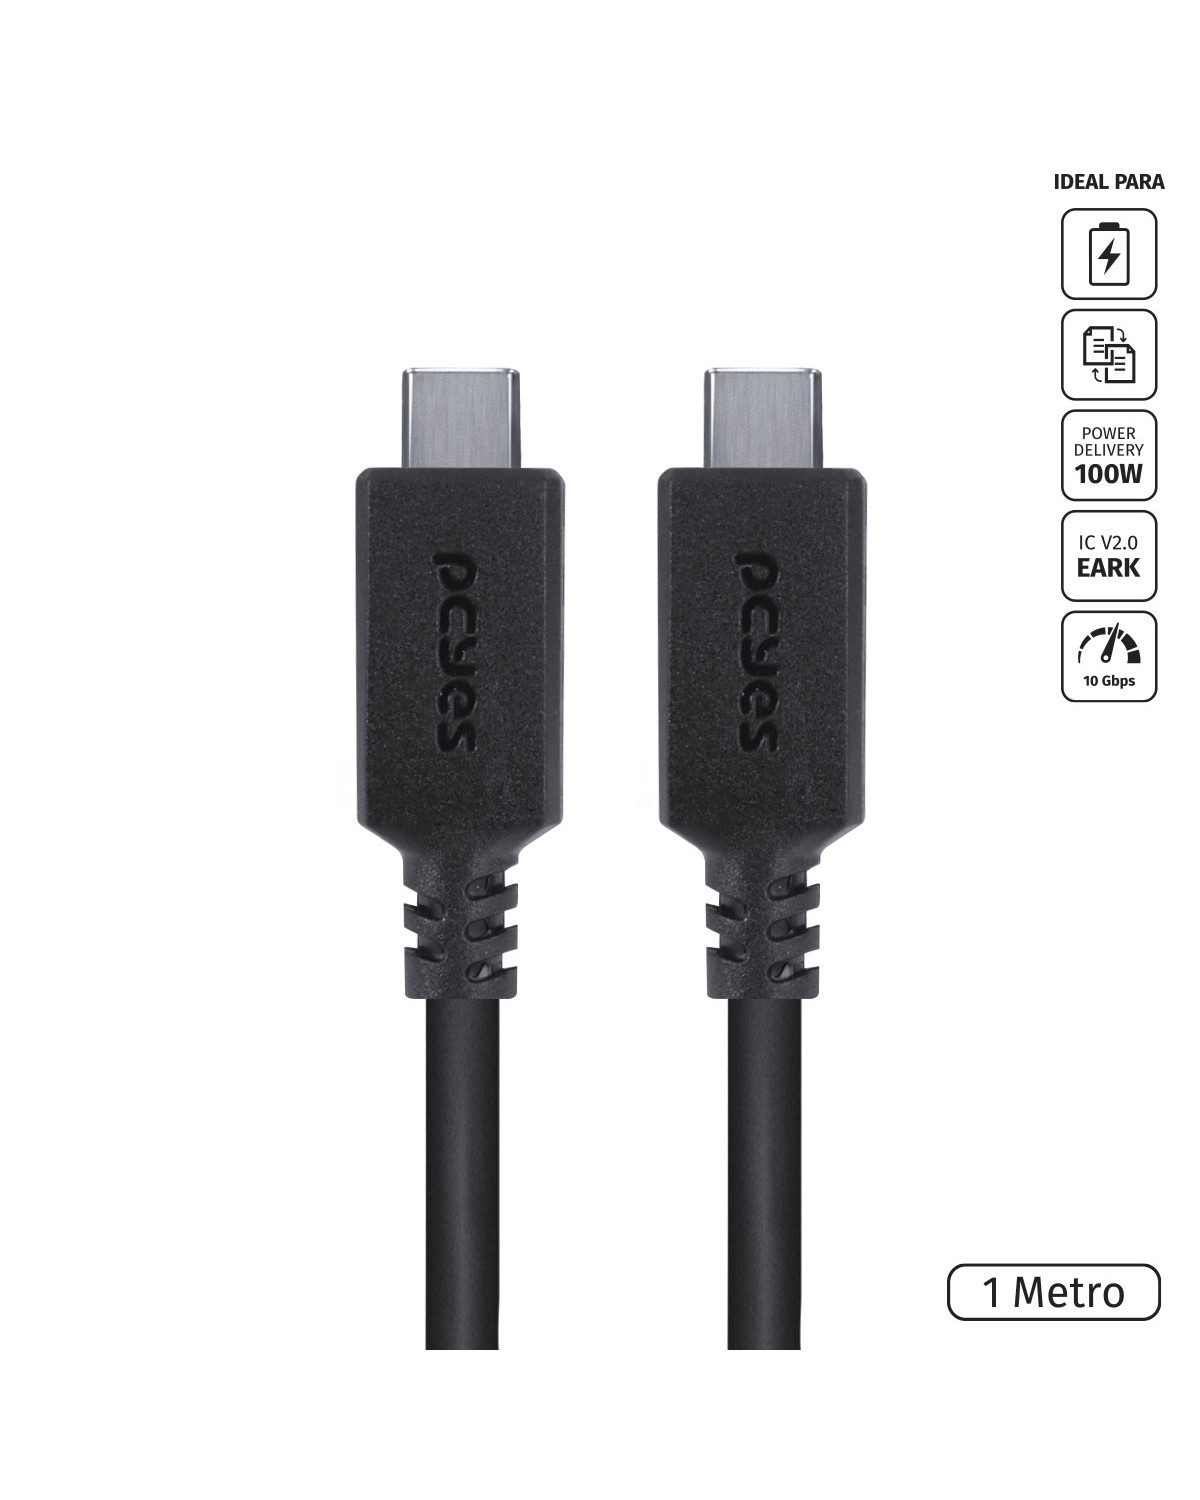 CABO USB TIPO C 3.1 PARA USB TIPO C COM POWER DELIVERY (PD) 100W PARA CELULAR SMARTPHONE 1 METRO PRETO - P31UCCP-1